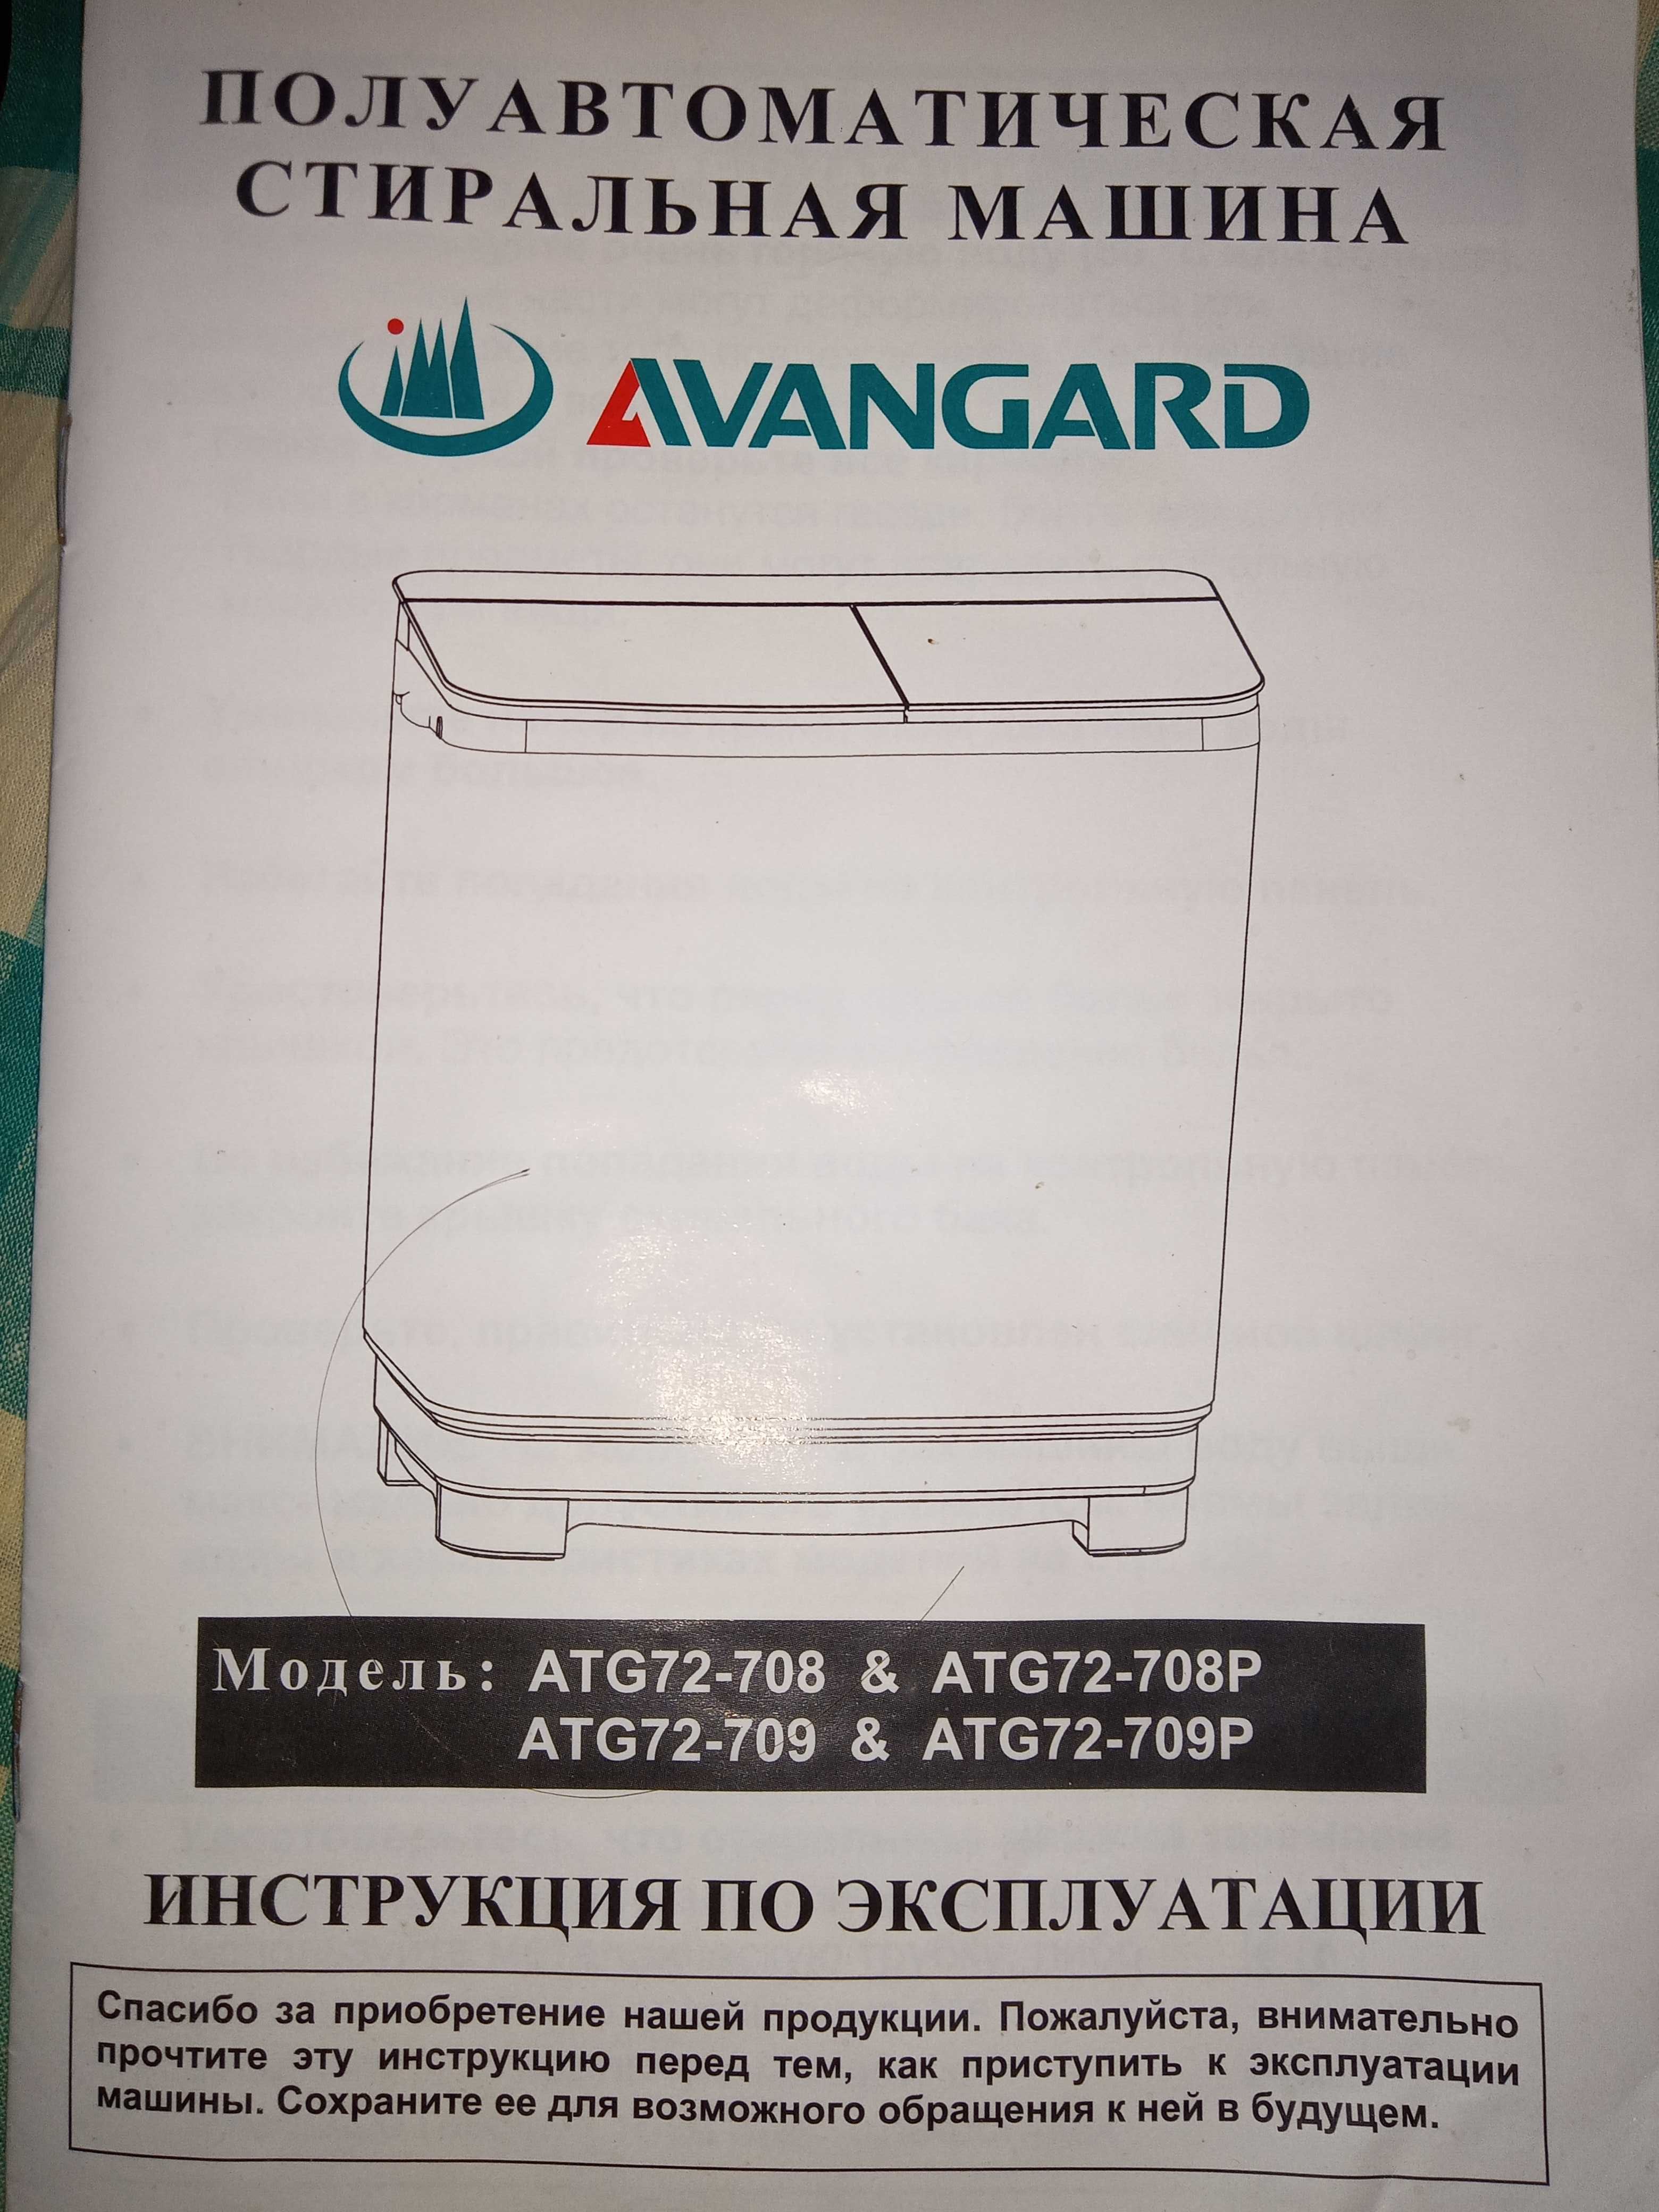 Продается полуавтоматическая стиральная машинка AVANGARD